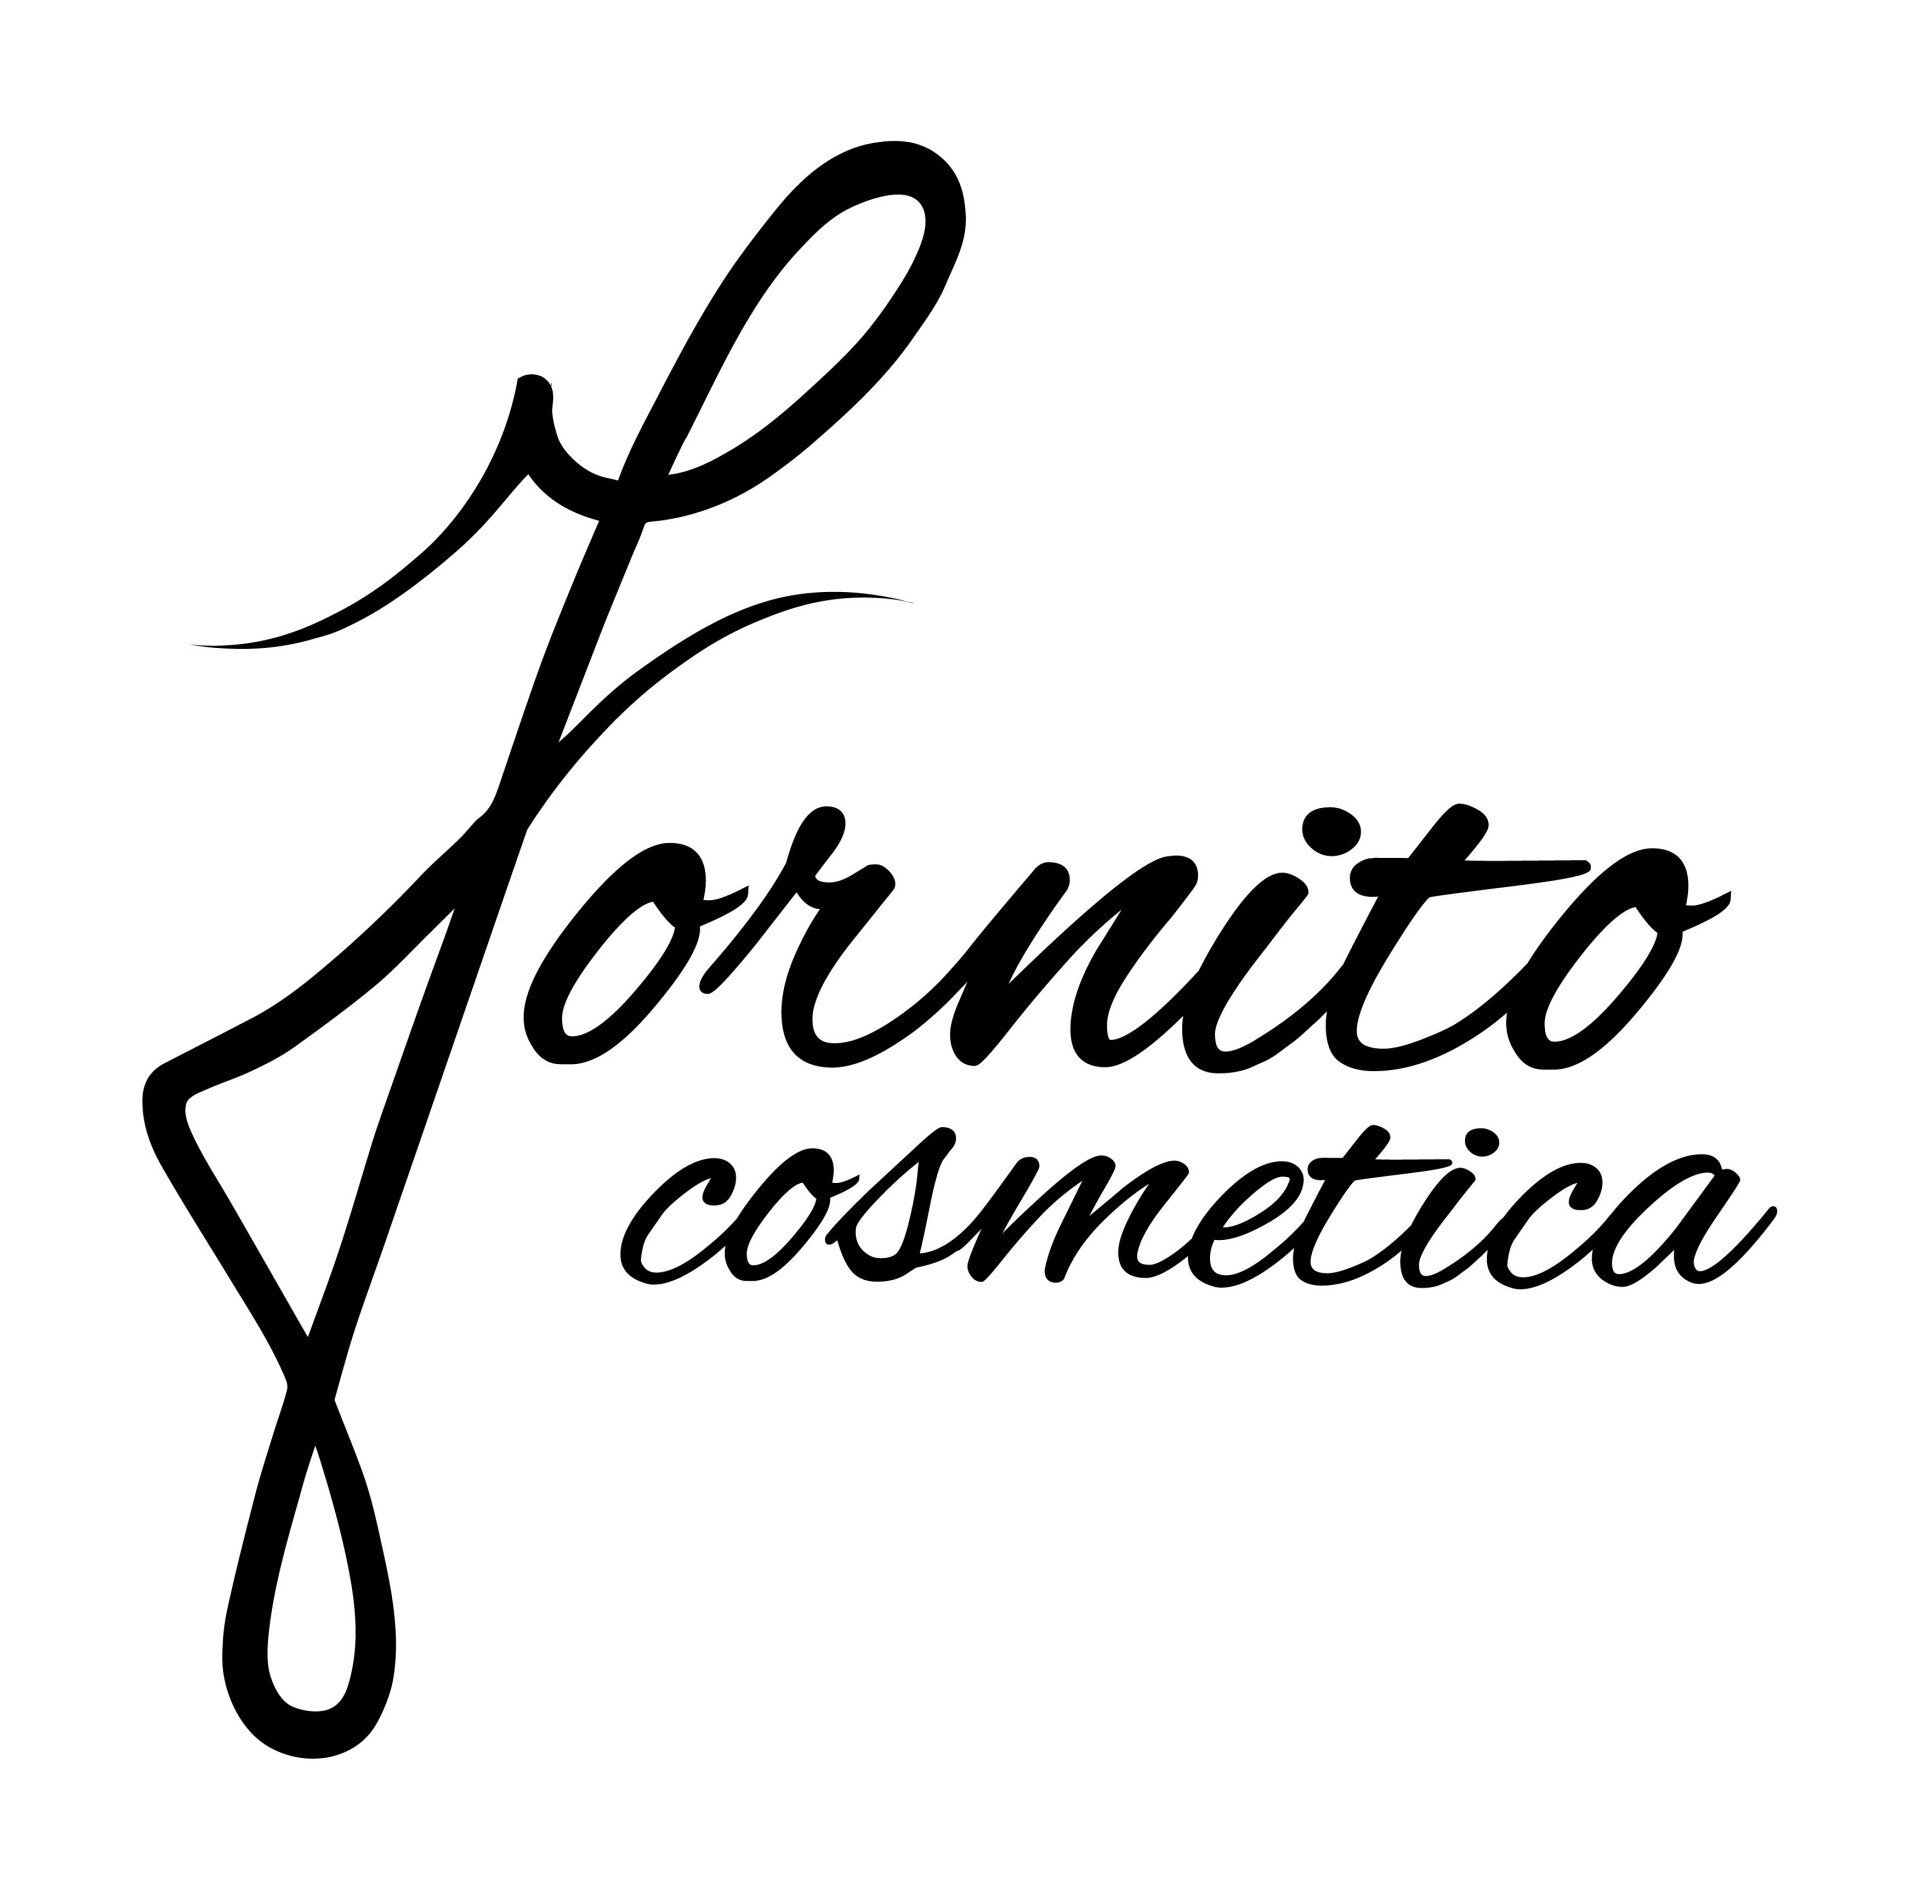 Fornito Cosmetica - LOGO